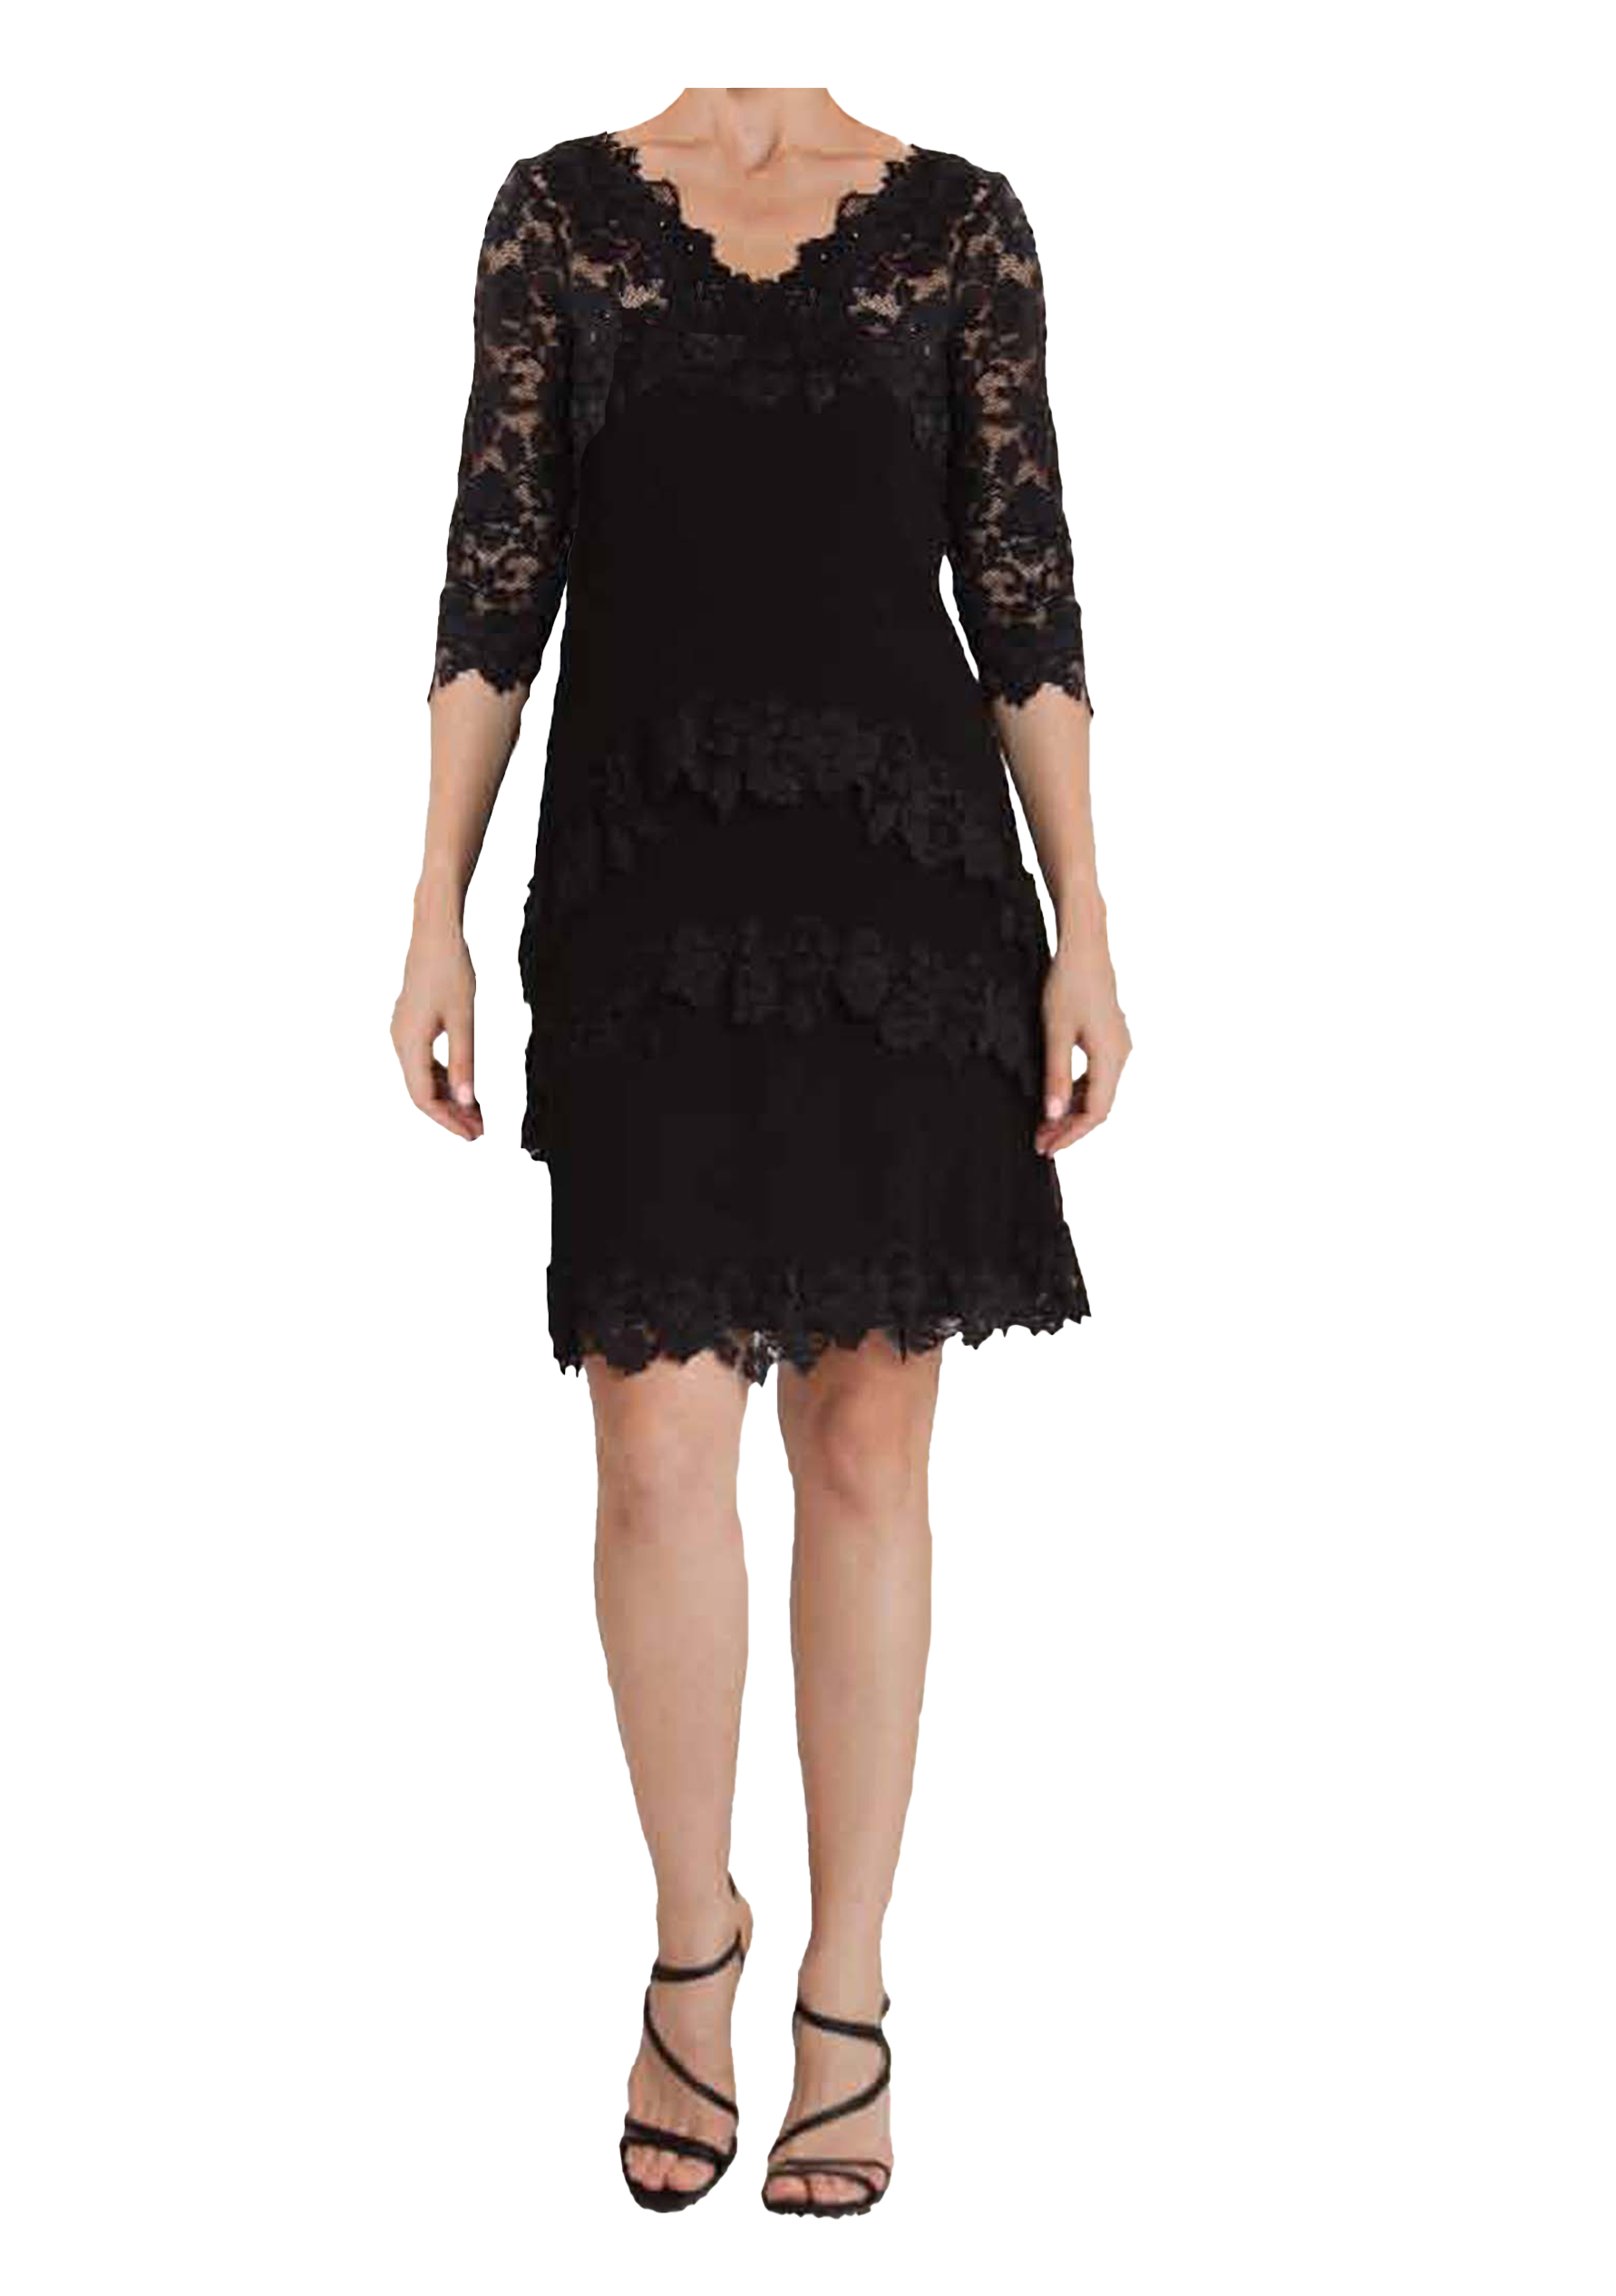 French Lace Dress Black V Neck D668